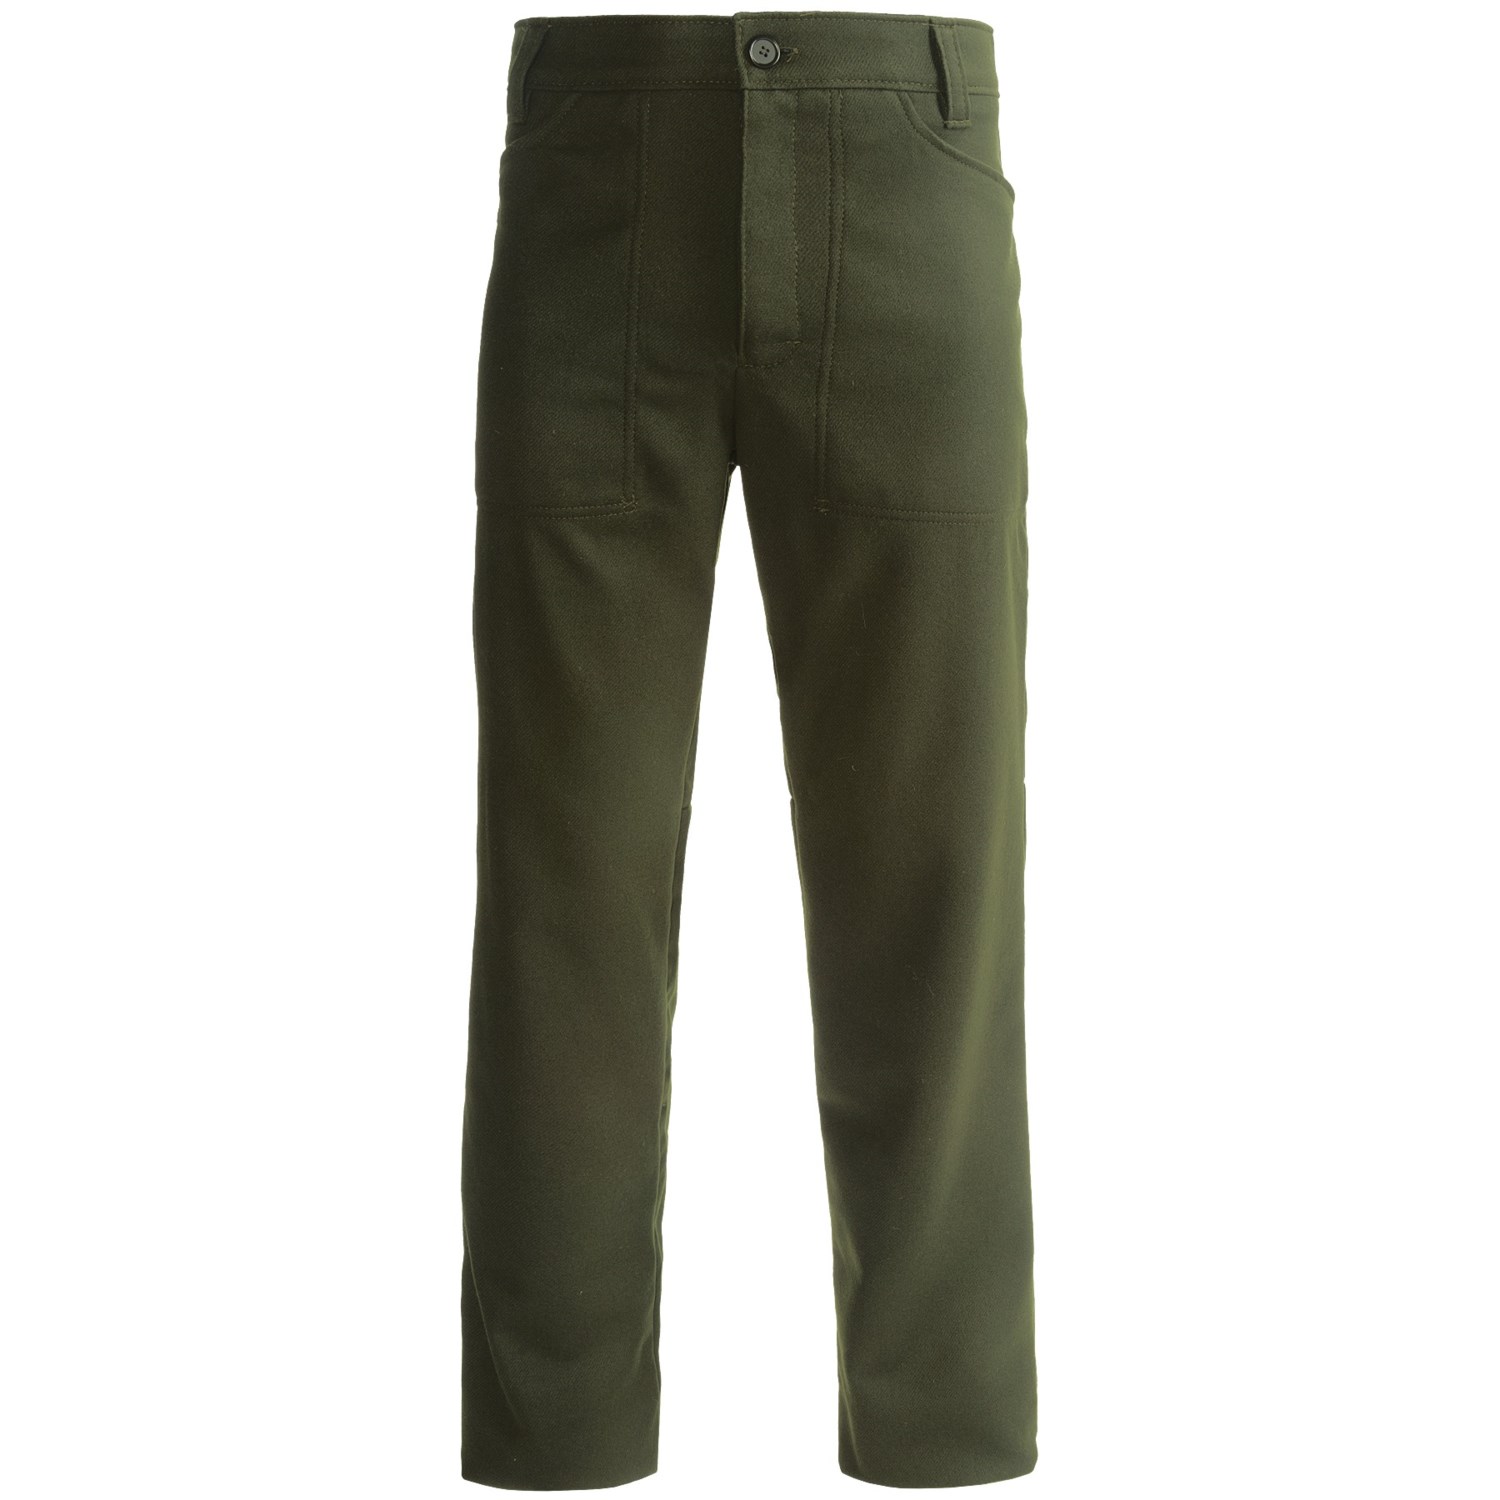 Stormy Kromer The Kromer Wool Trouser Pants (For Men) 6577G - Save 37%